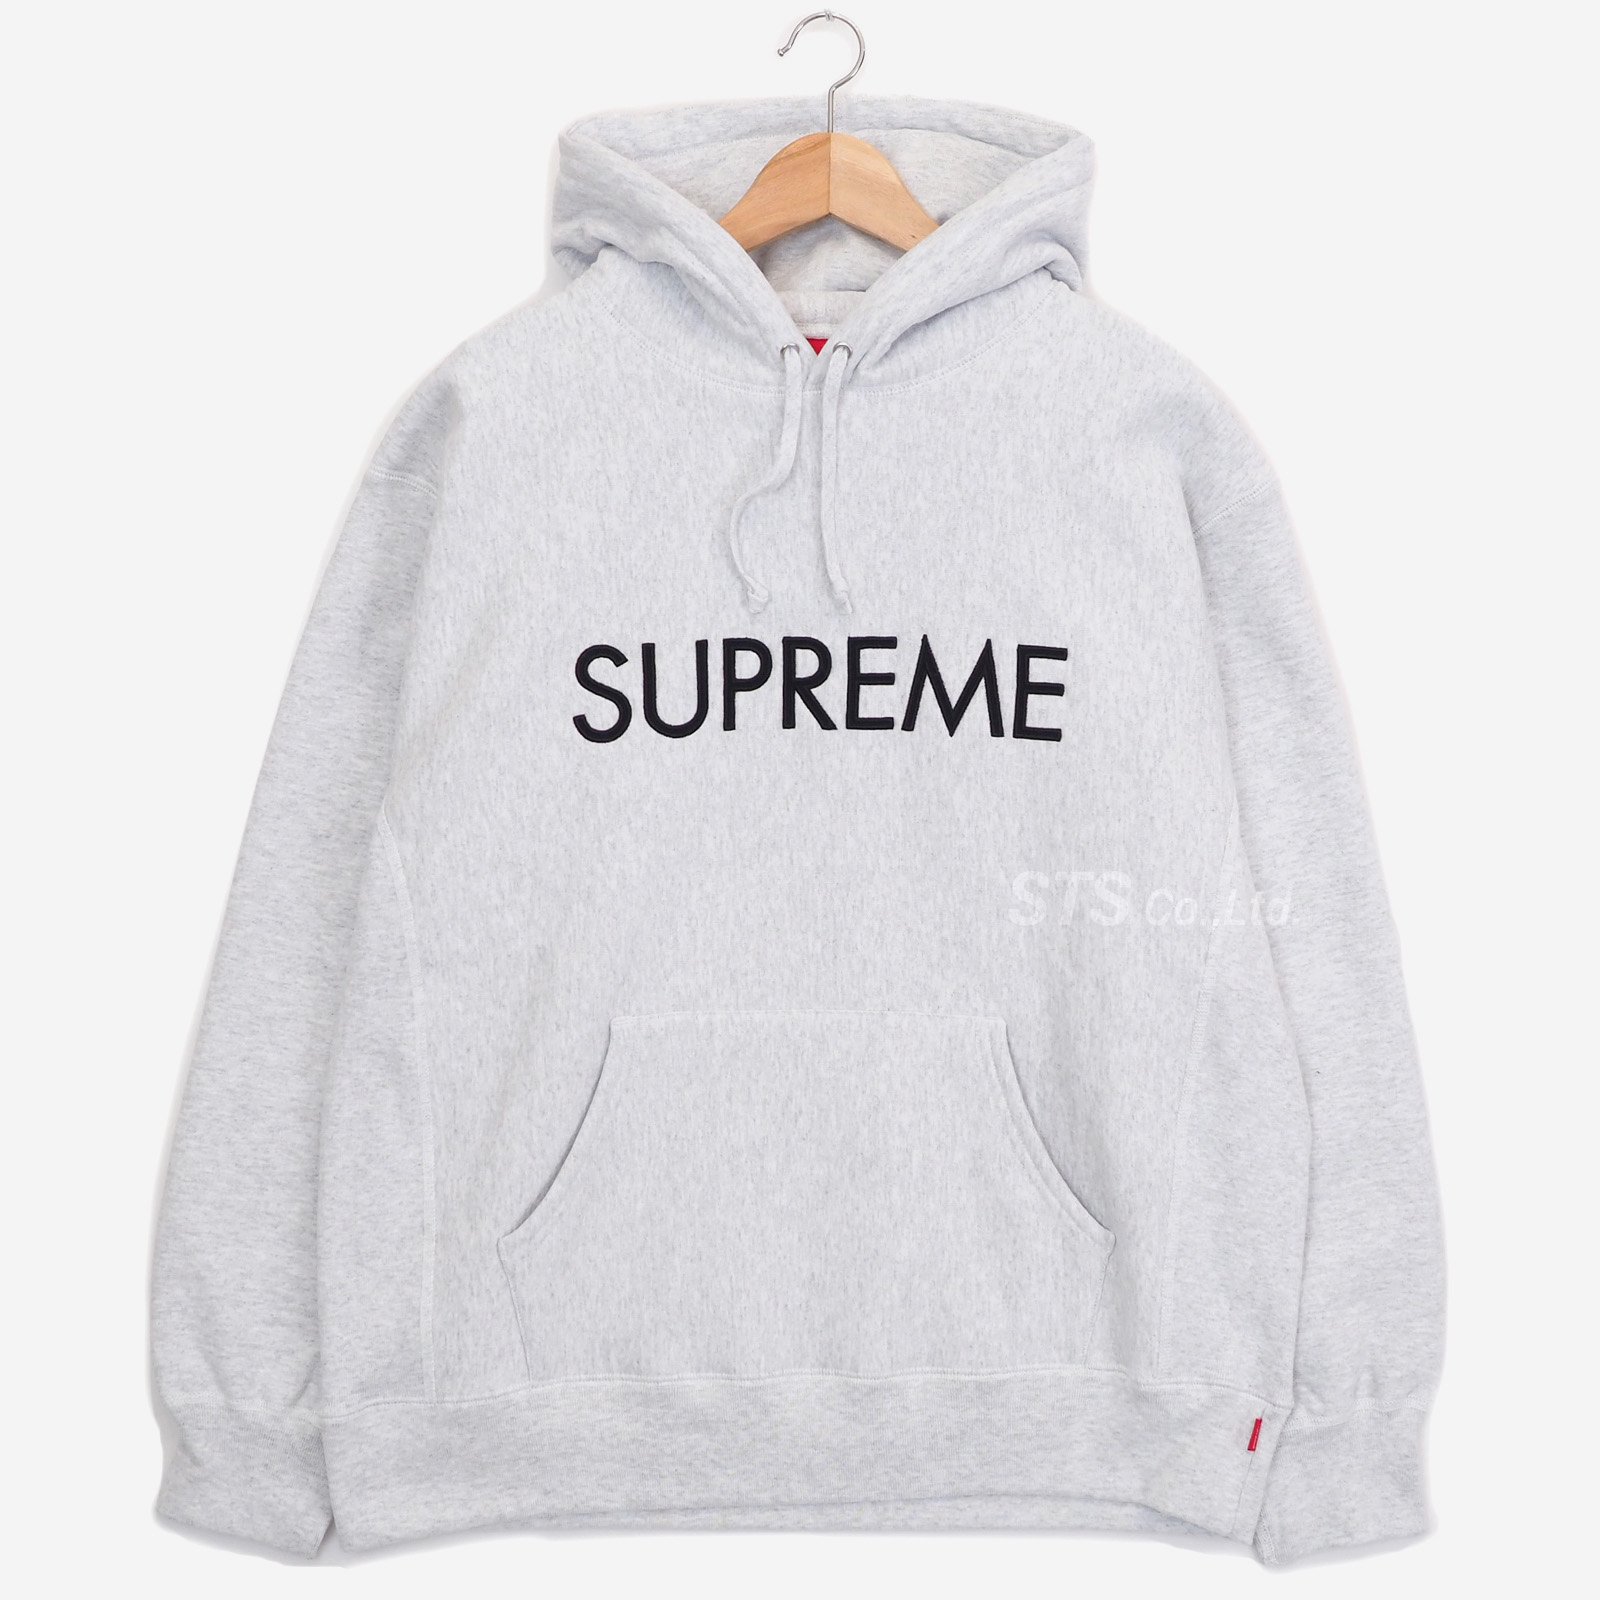 Supreme - Capital Hooded Sweatshirt - UG.SHAFT